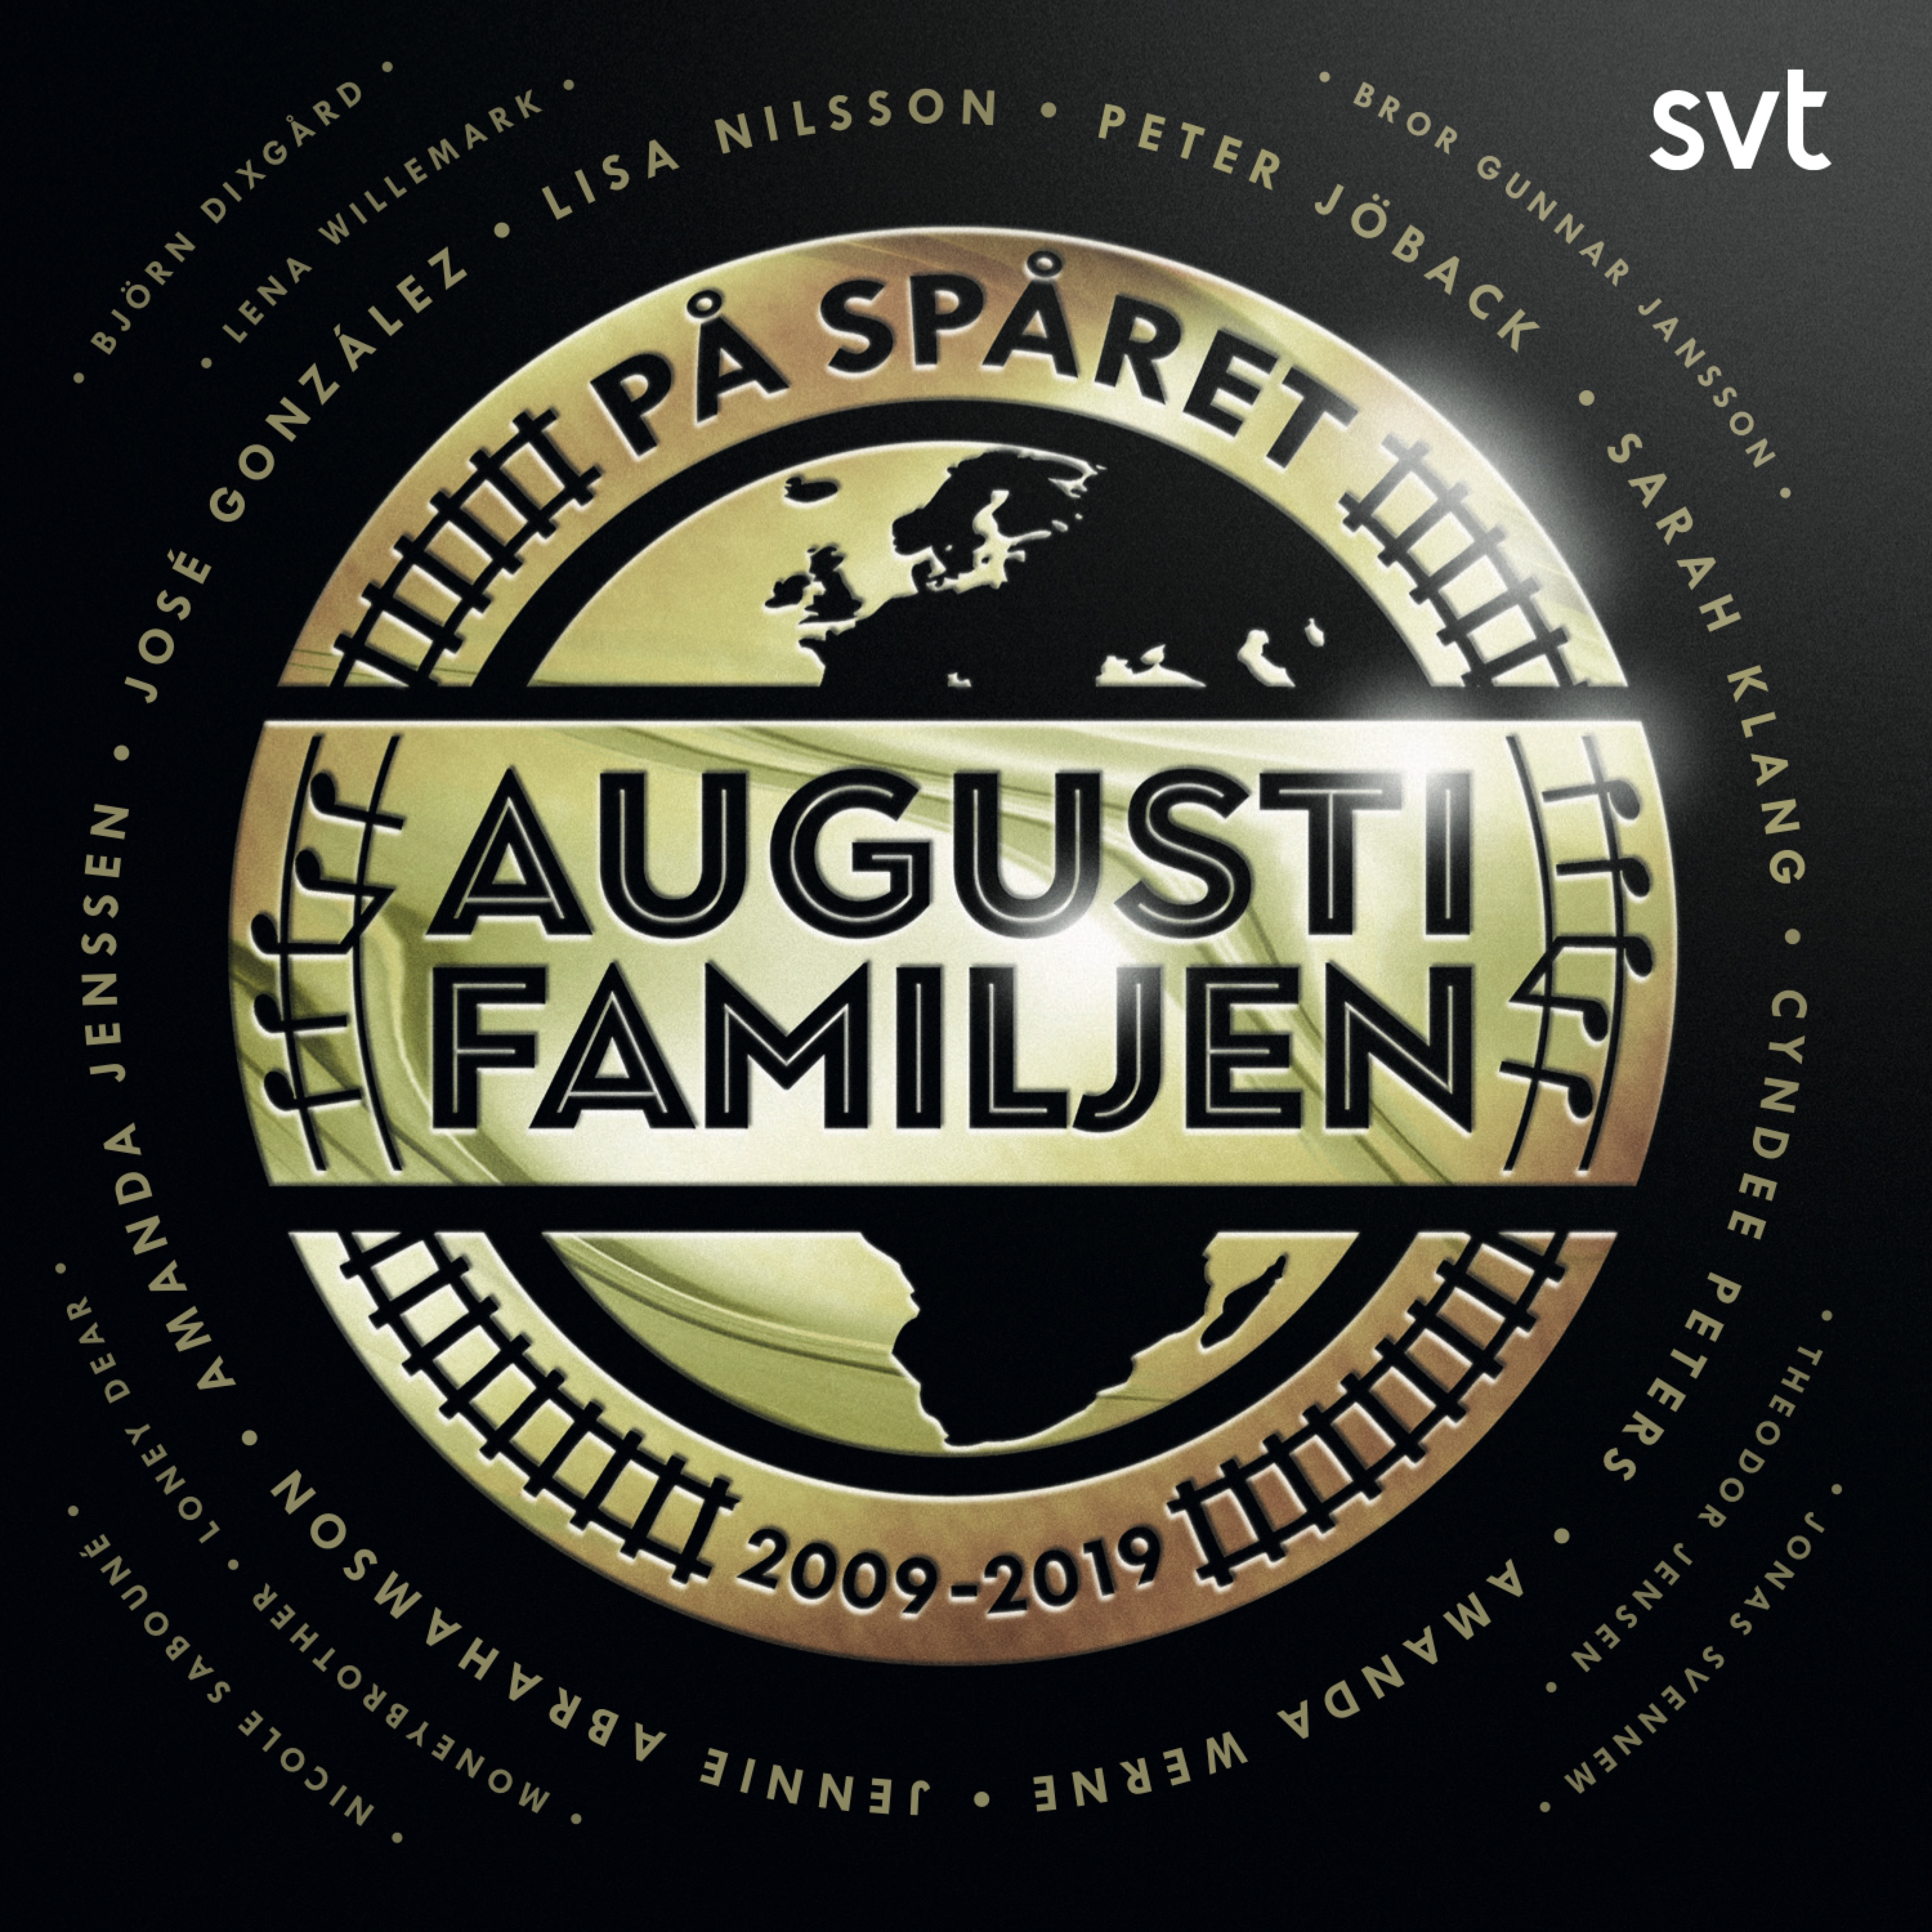 Augustifamiljen - P  sp ret (2009-2019) - CD